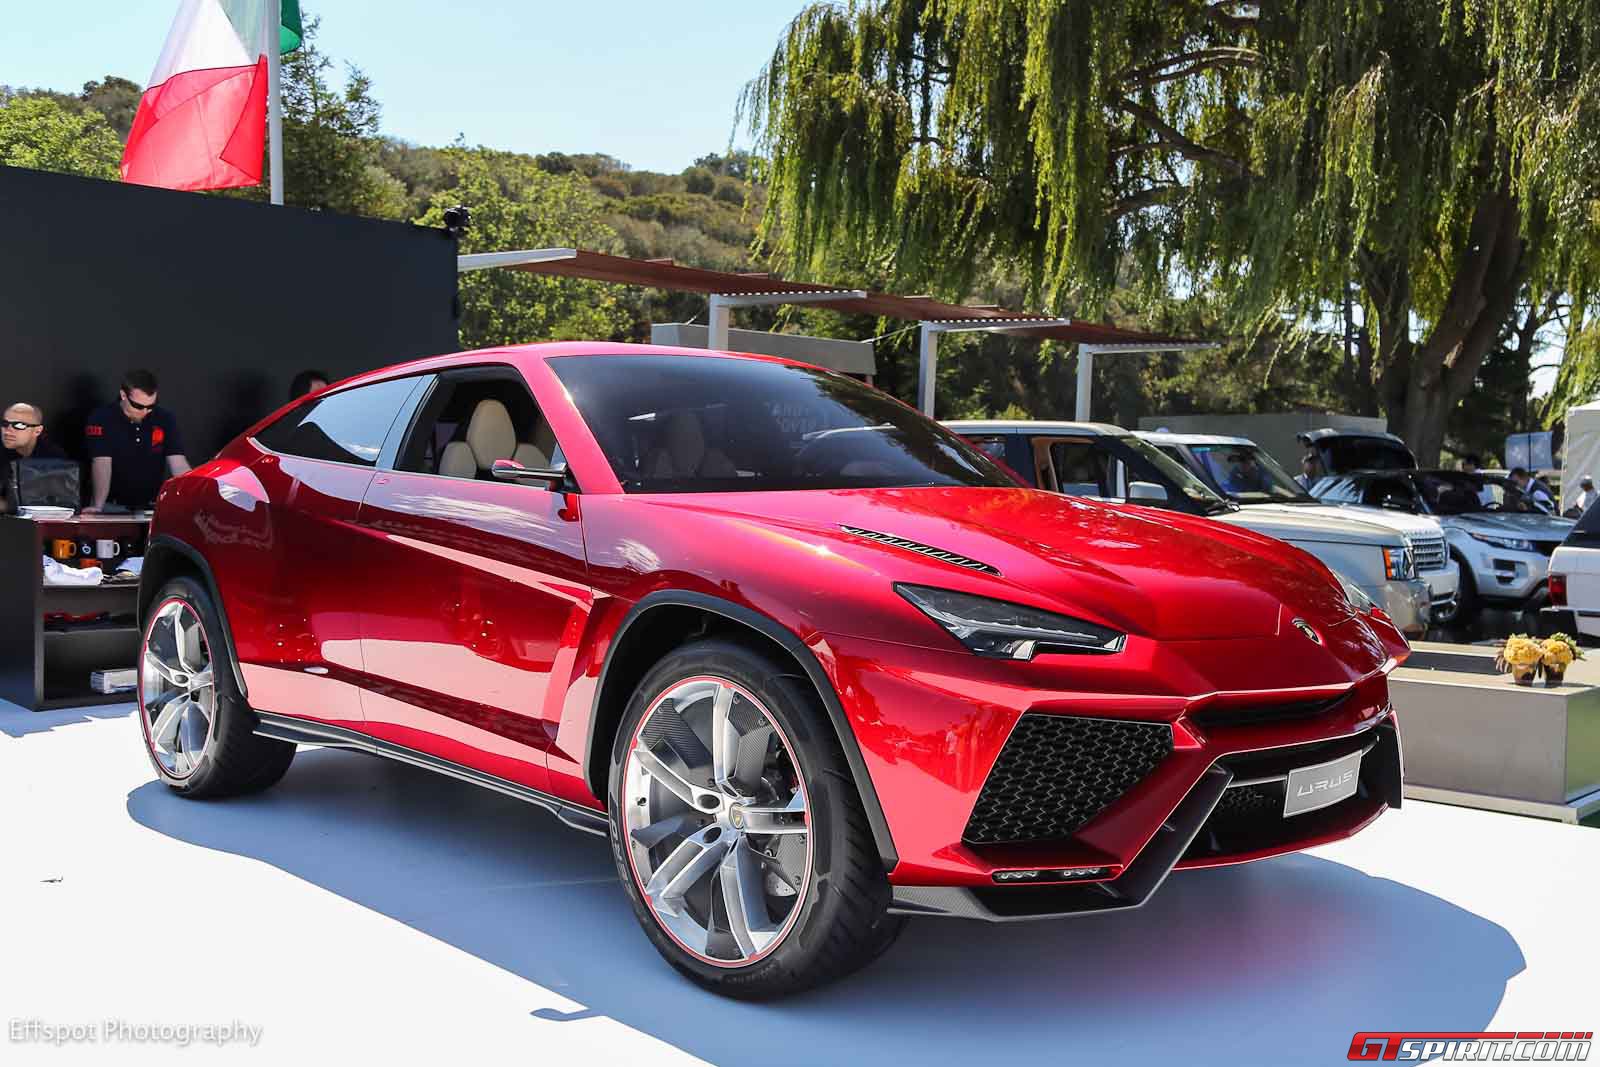 New Car Spirit: New Lamborghini Urus Concept Very Tempting